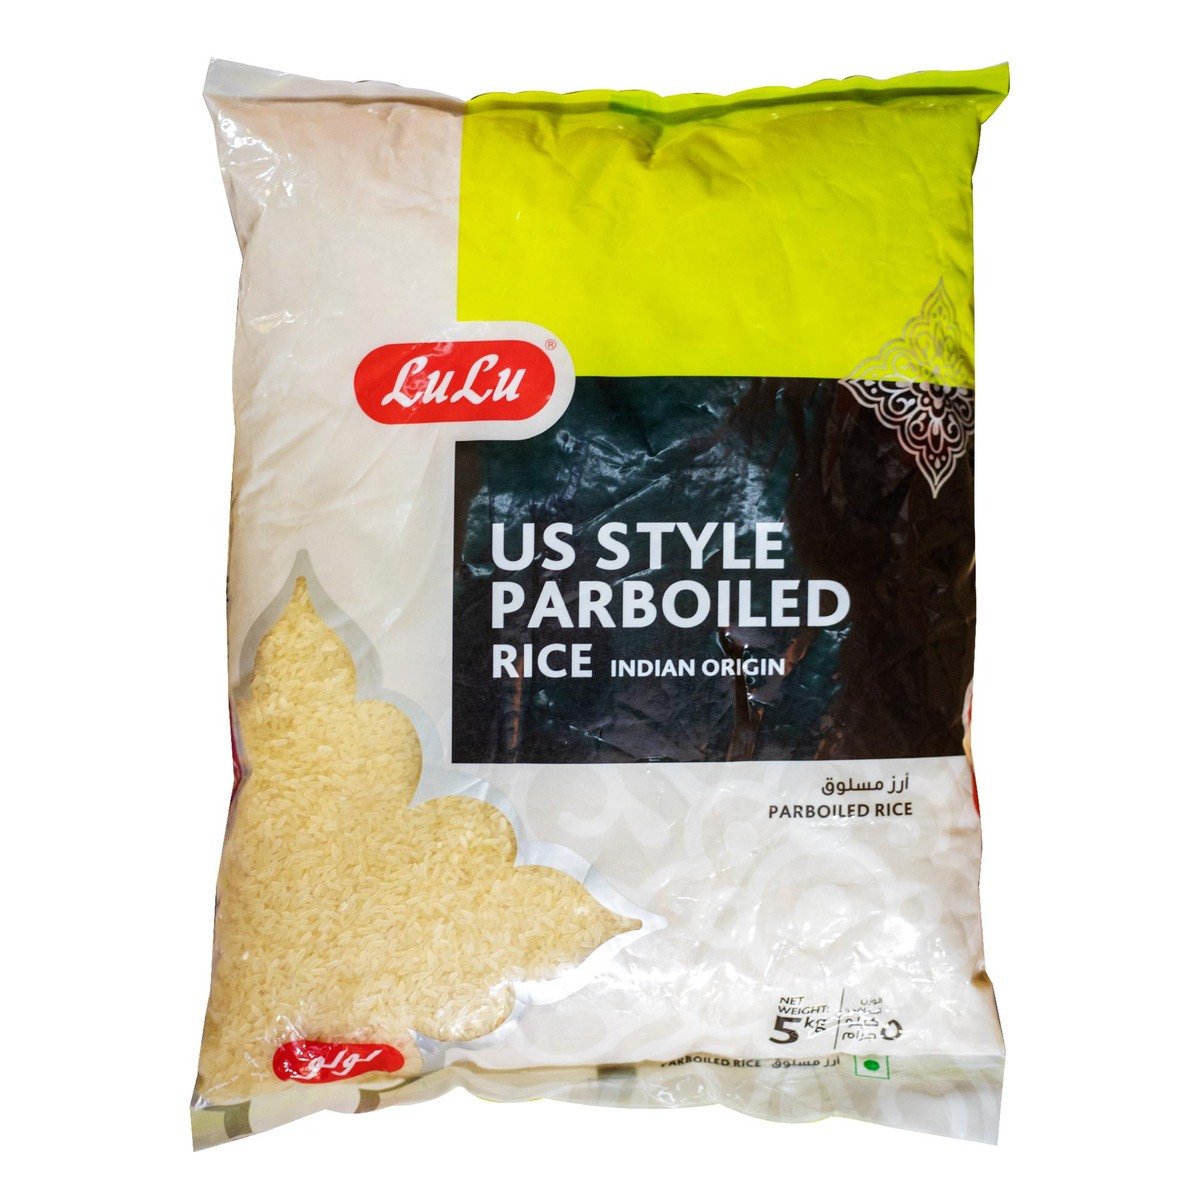 LuLu US Style Parboiled Rice 5 kg